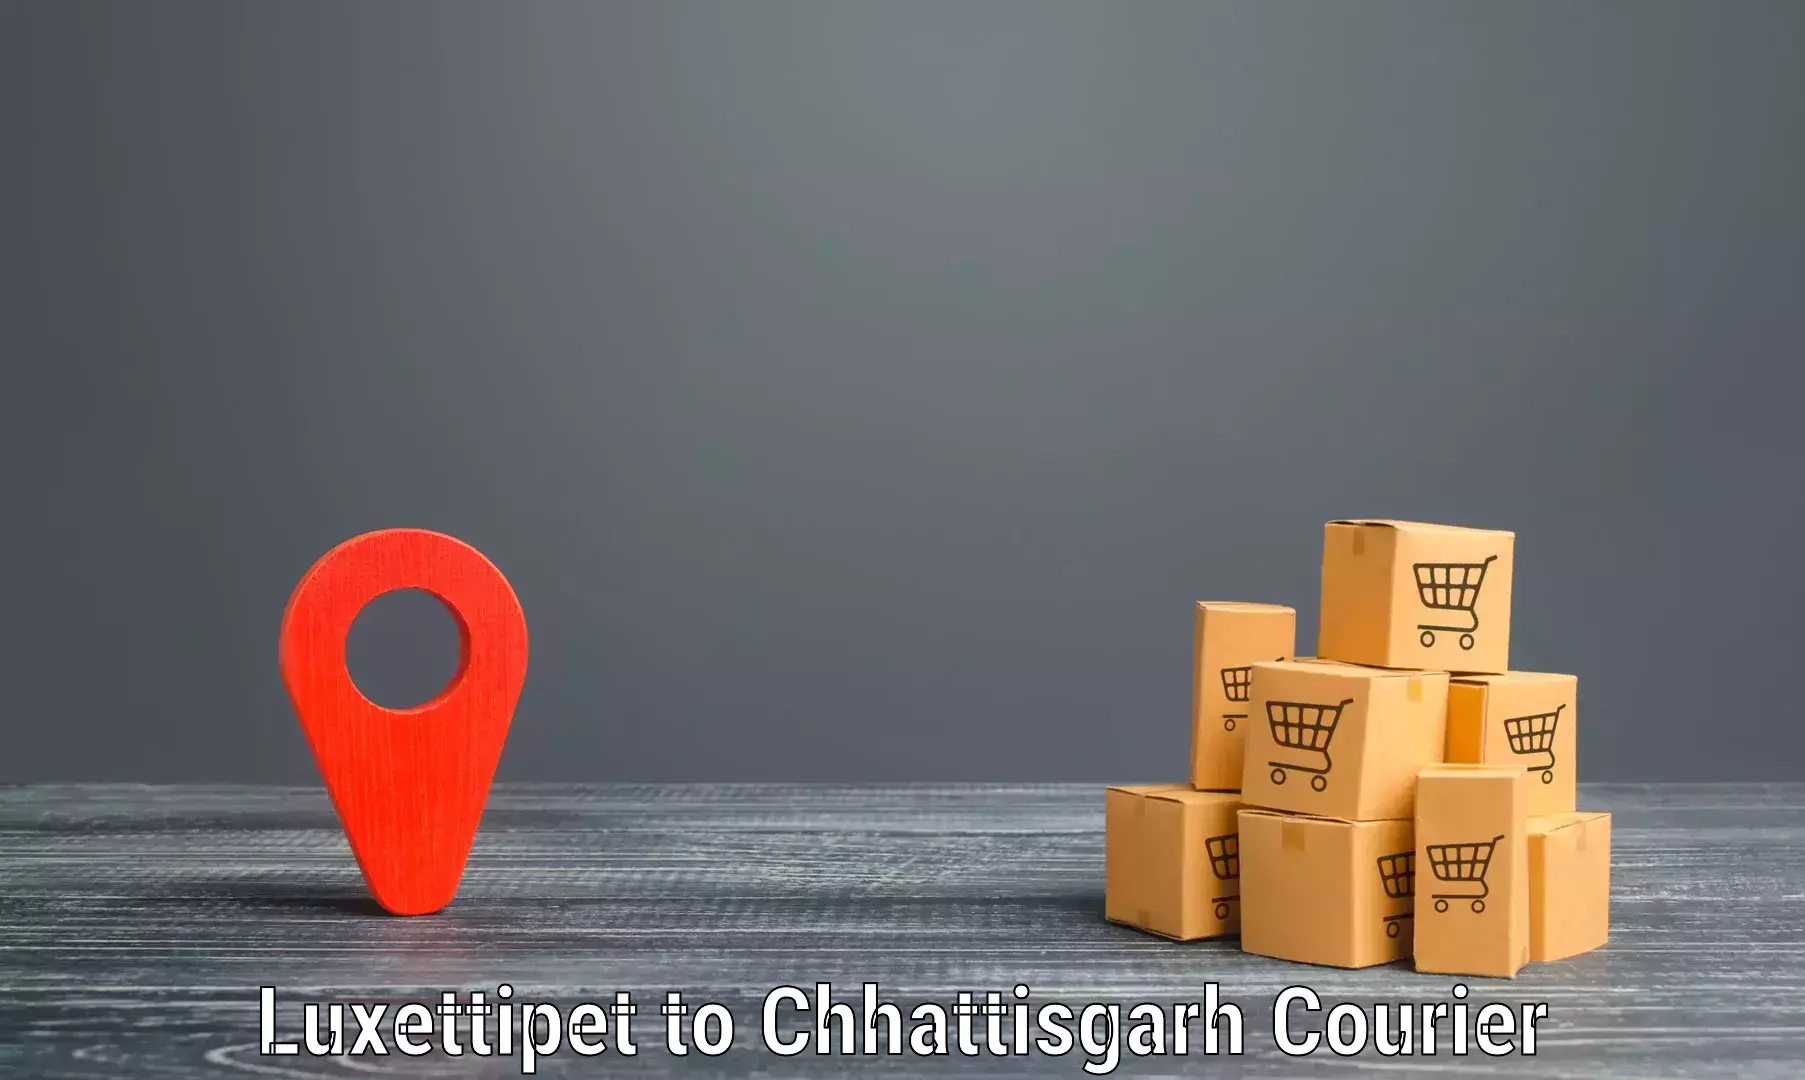 Efficient cargo handling in Luxettipet to Chhattisgarh